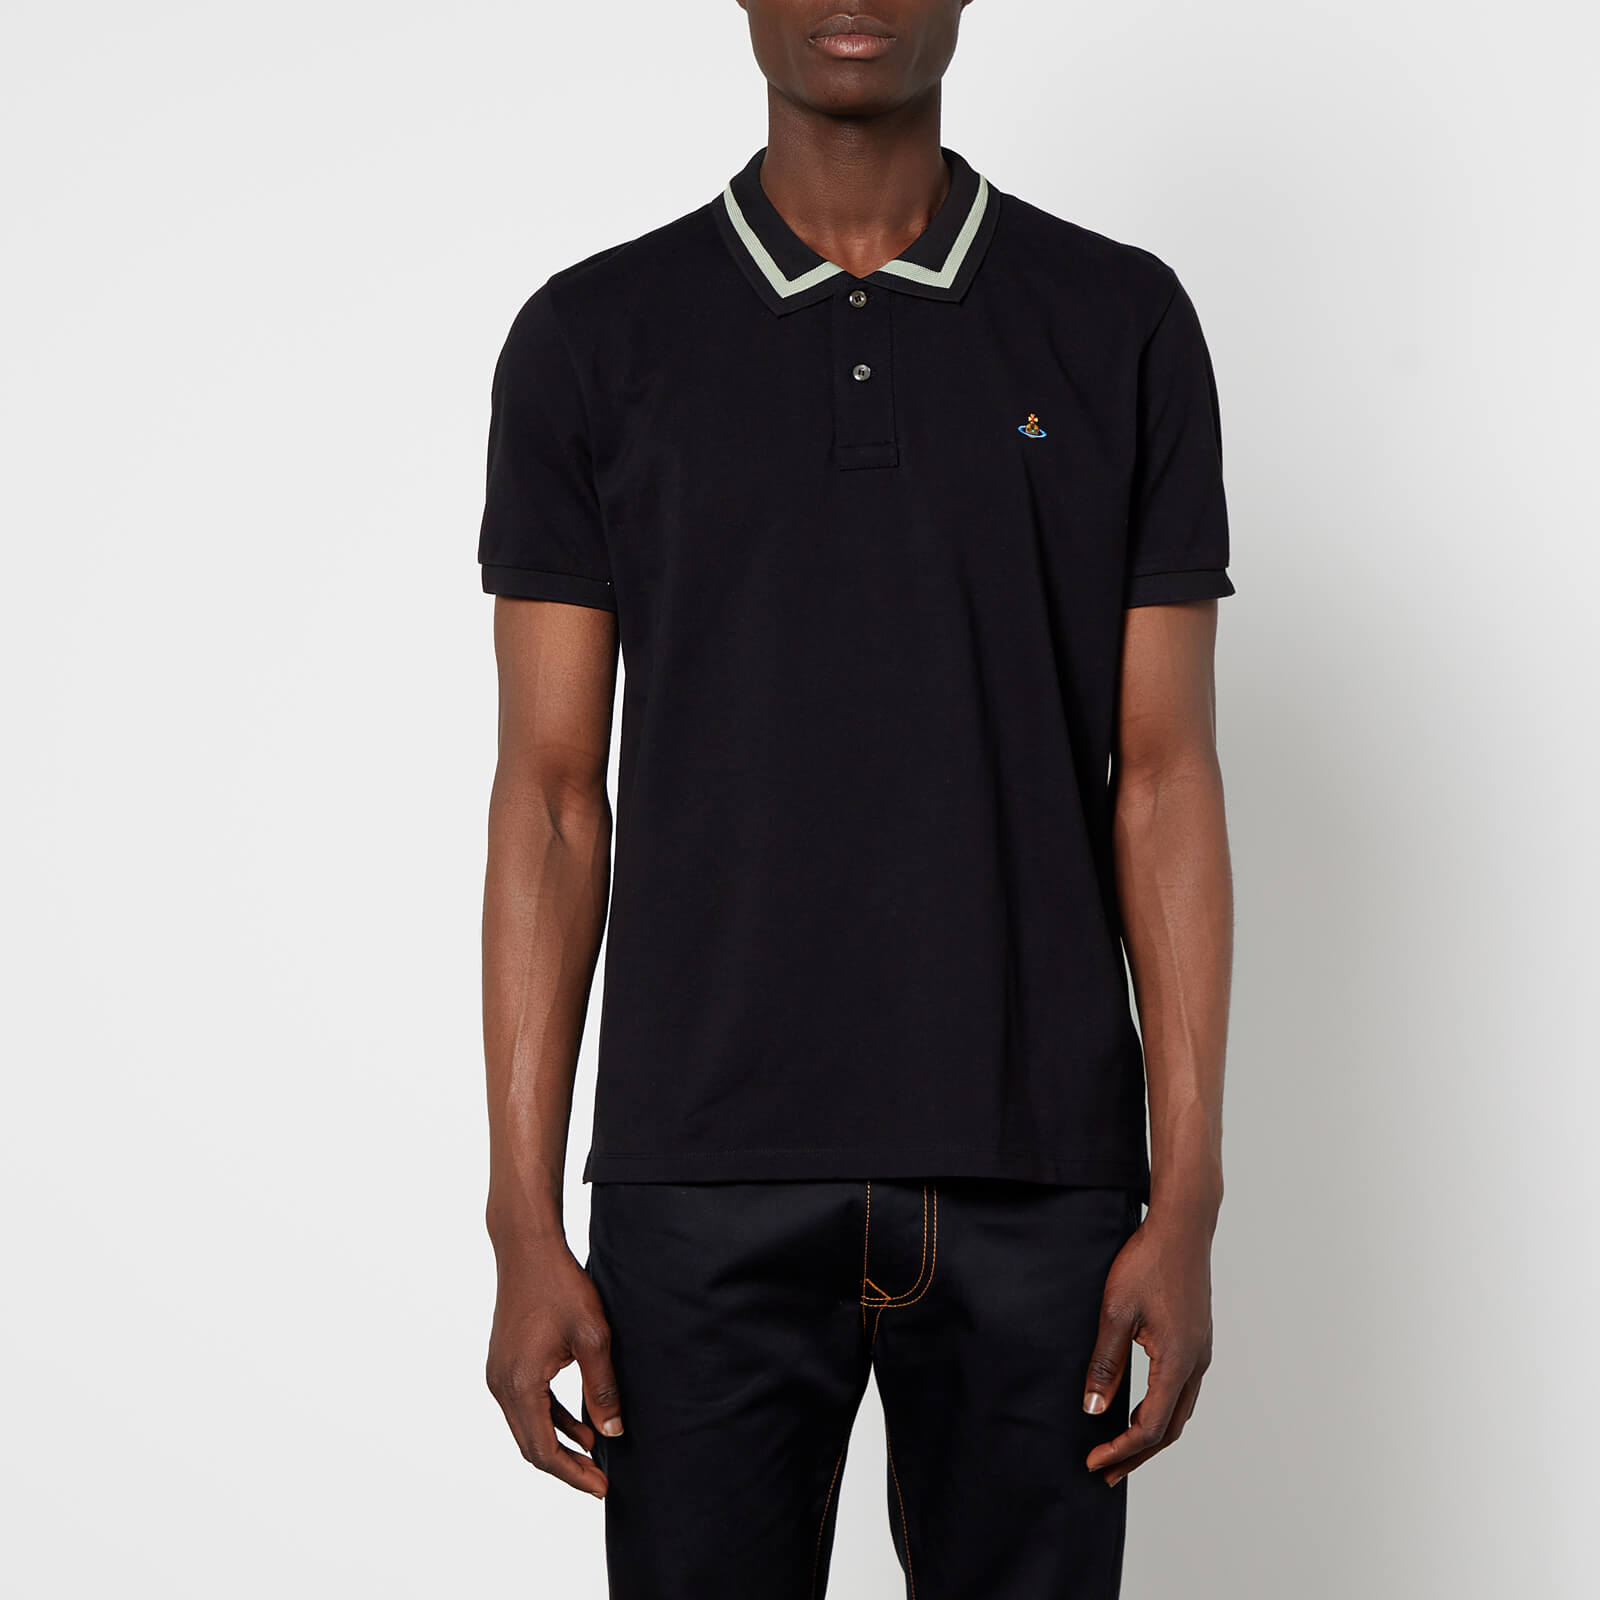 Vivienne Westwood Men's Stripe Collar Classic Polo Shirt - Black - S